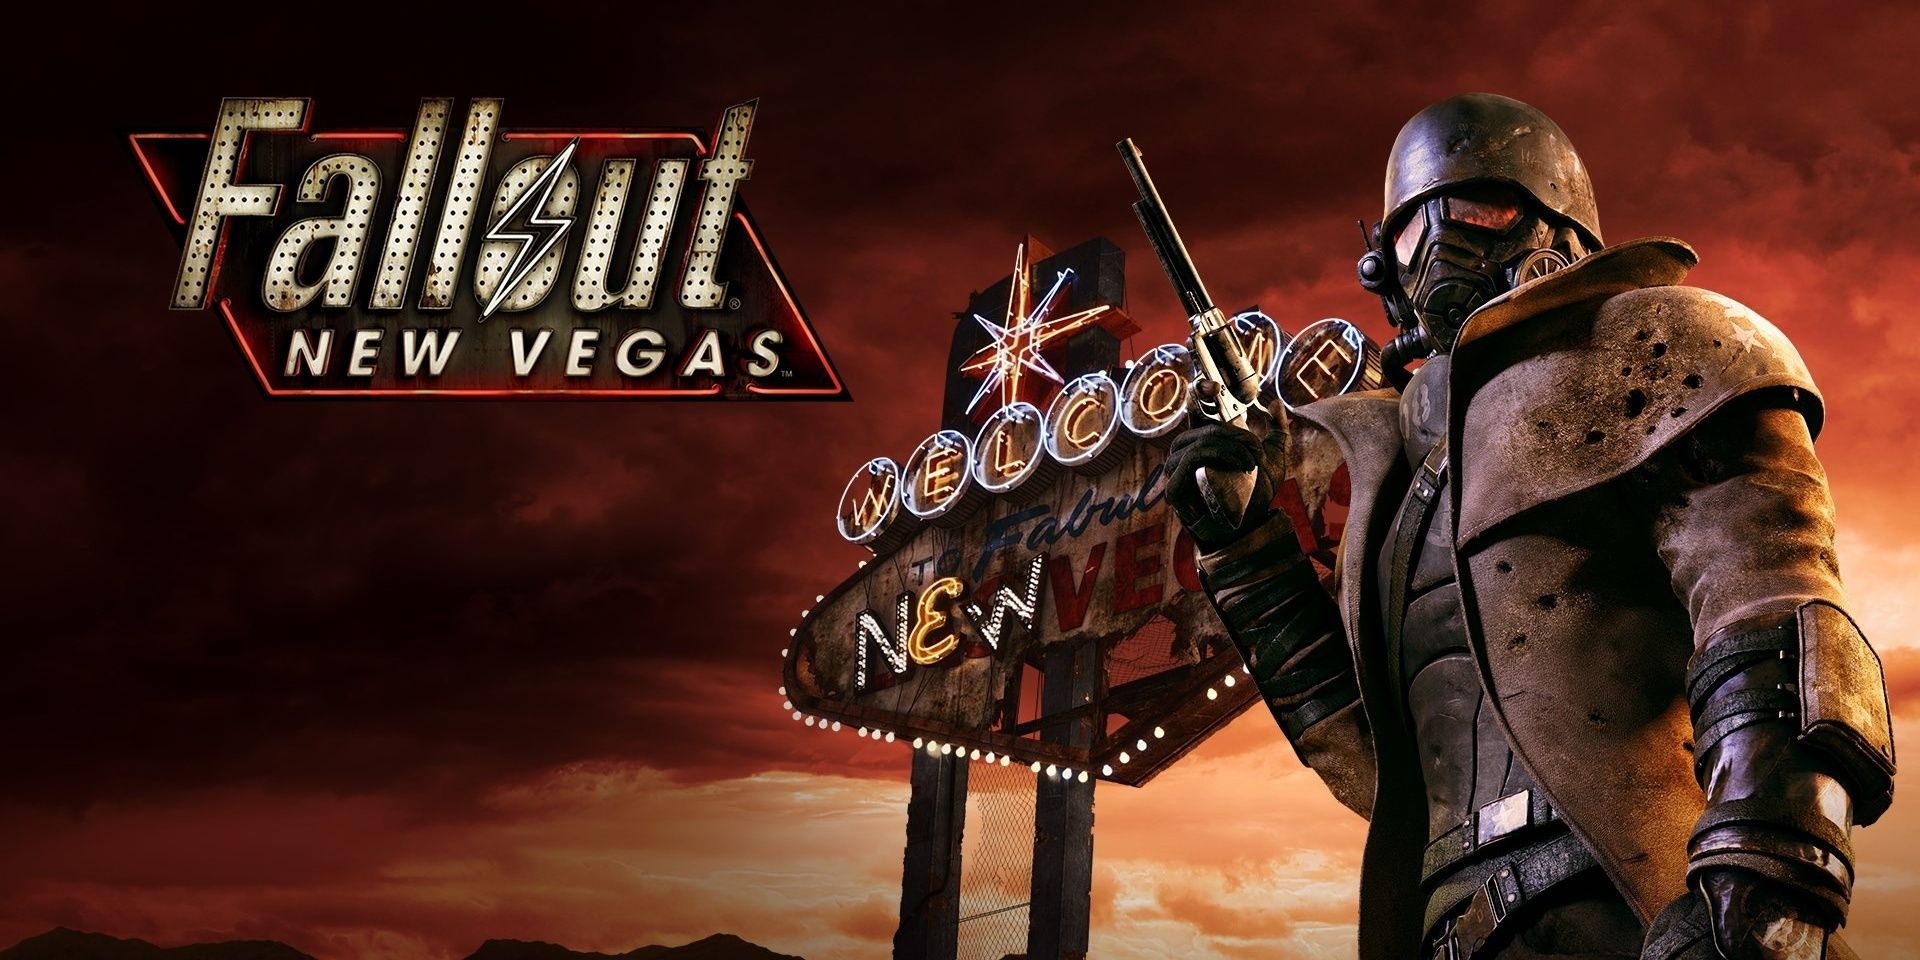 Le Lone Ranger de Fallout New Vegas posant avec un pistolet à la main alors qu'il regarde avec le signe de la ville derrière lui.